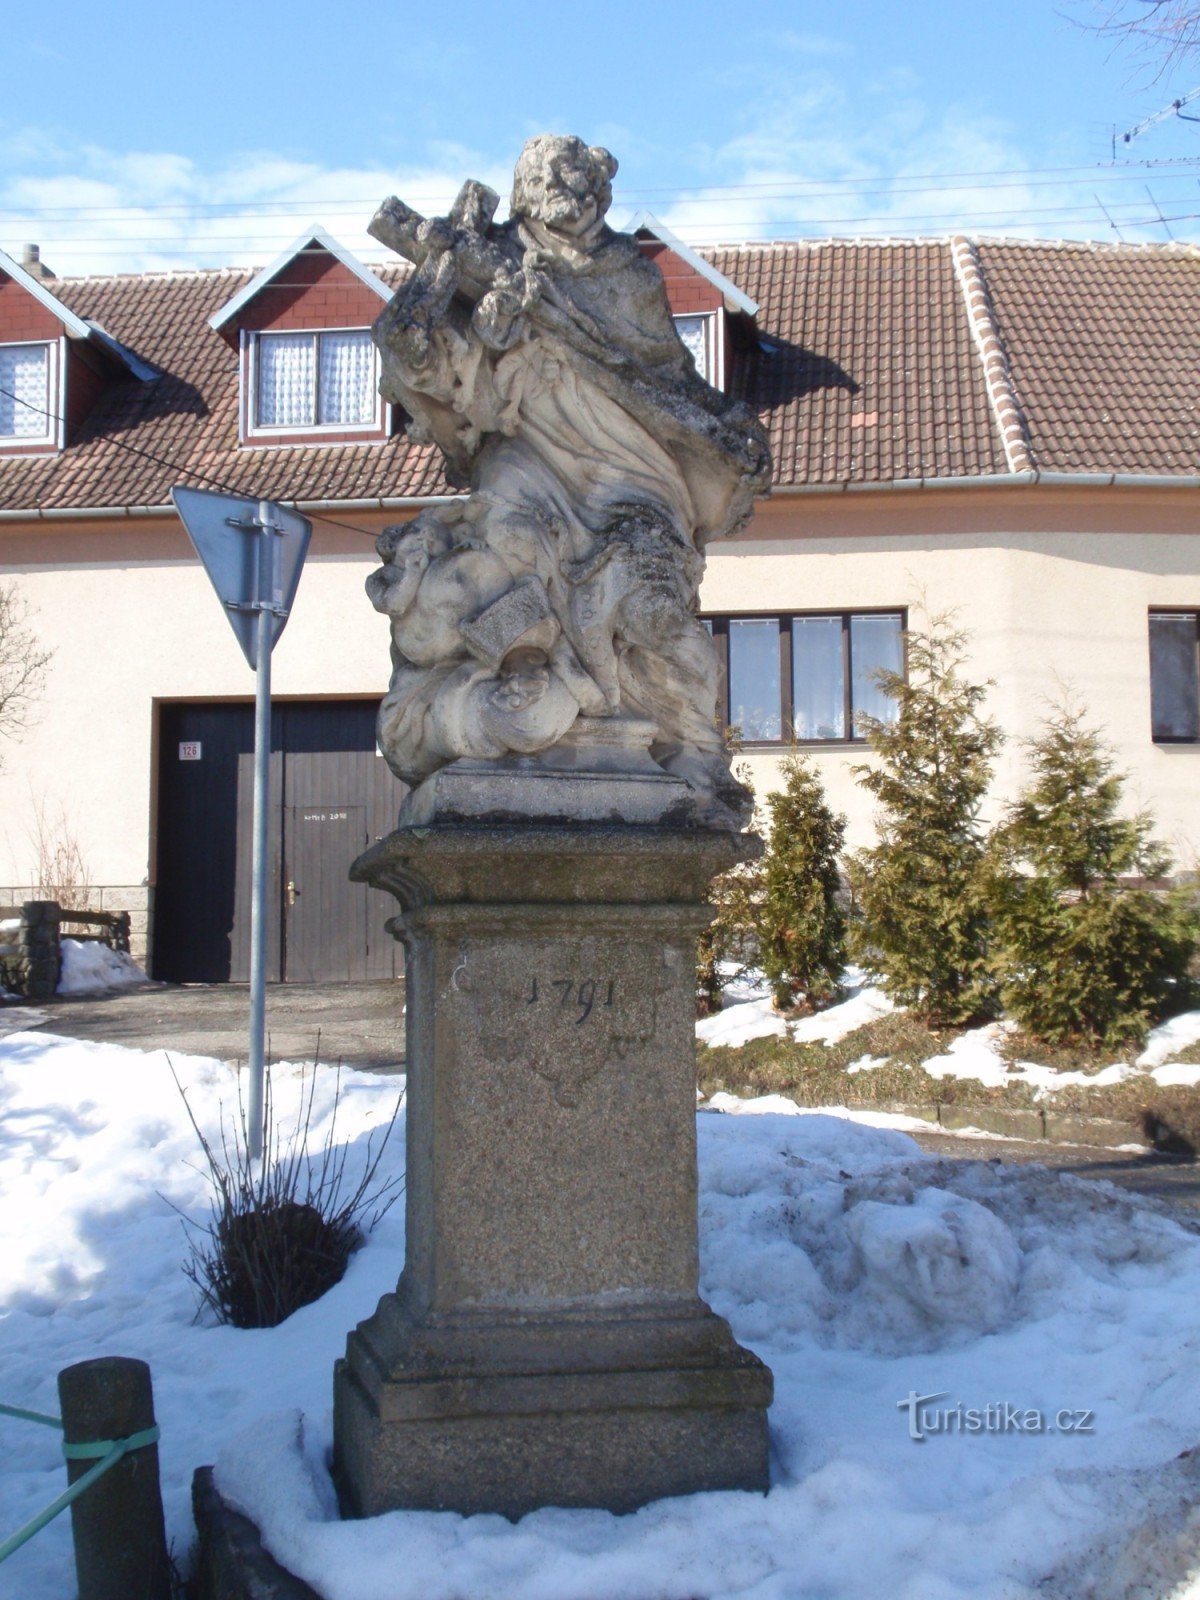 Kožichovice - statue of St. Jan Nepomucký